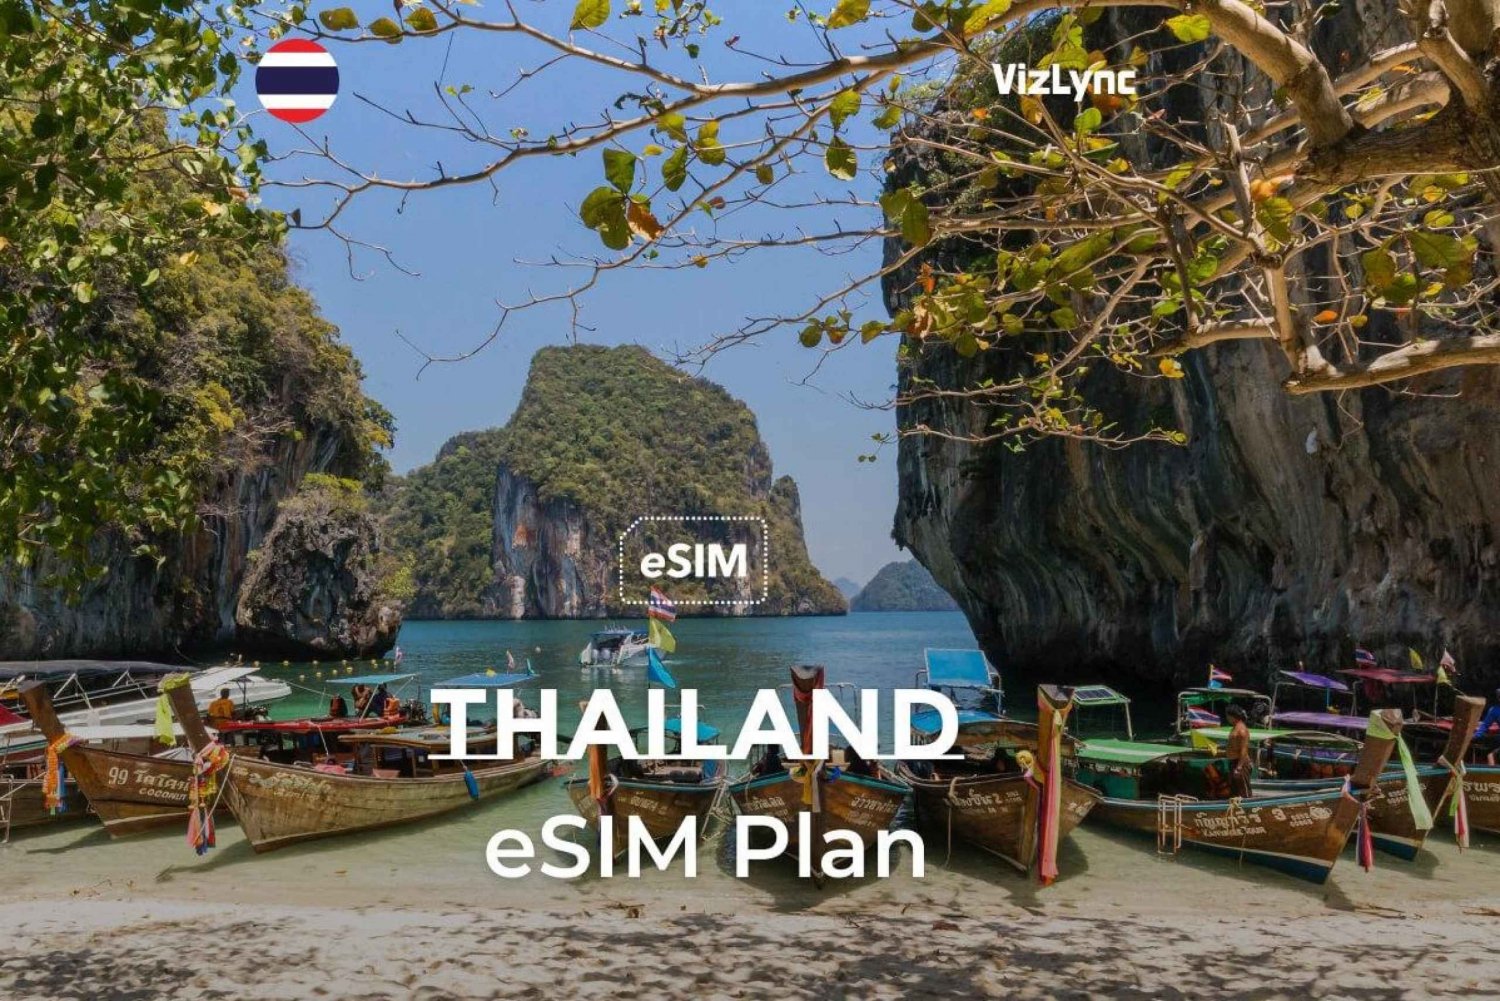 Plano eSIM da Tailândia por 8 dias com 15 GB de dados de alta velocidade